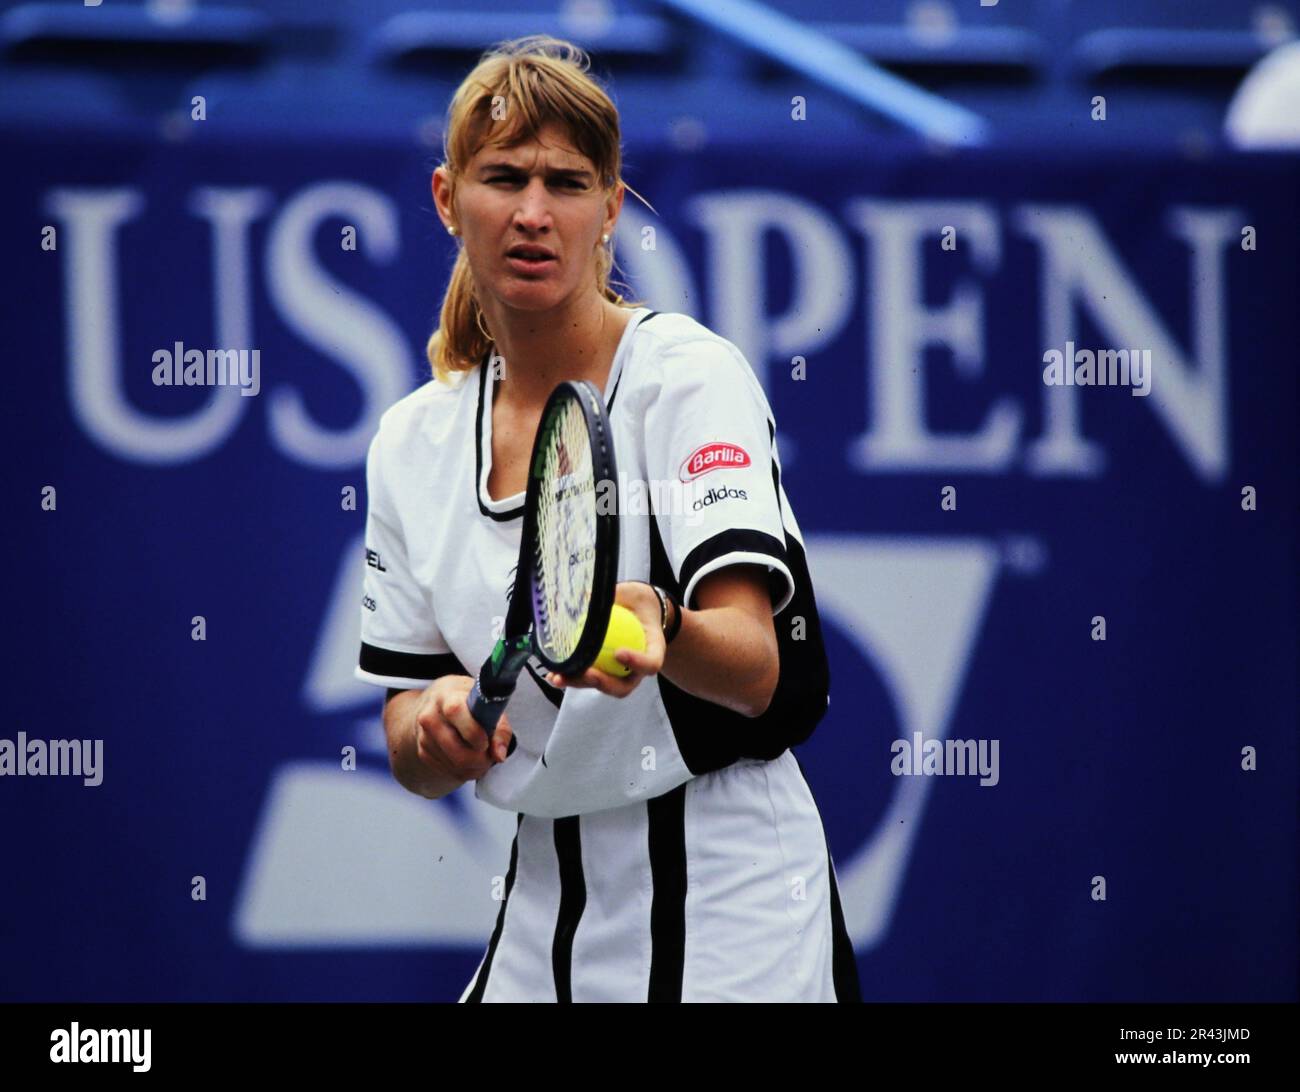 Stefanie Steffi Graf, deutsche Tennisspielerin, auf dem Tennisplatz in Aktion. Stockfoto